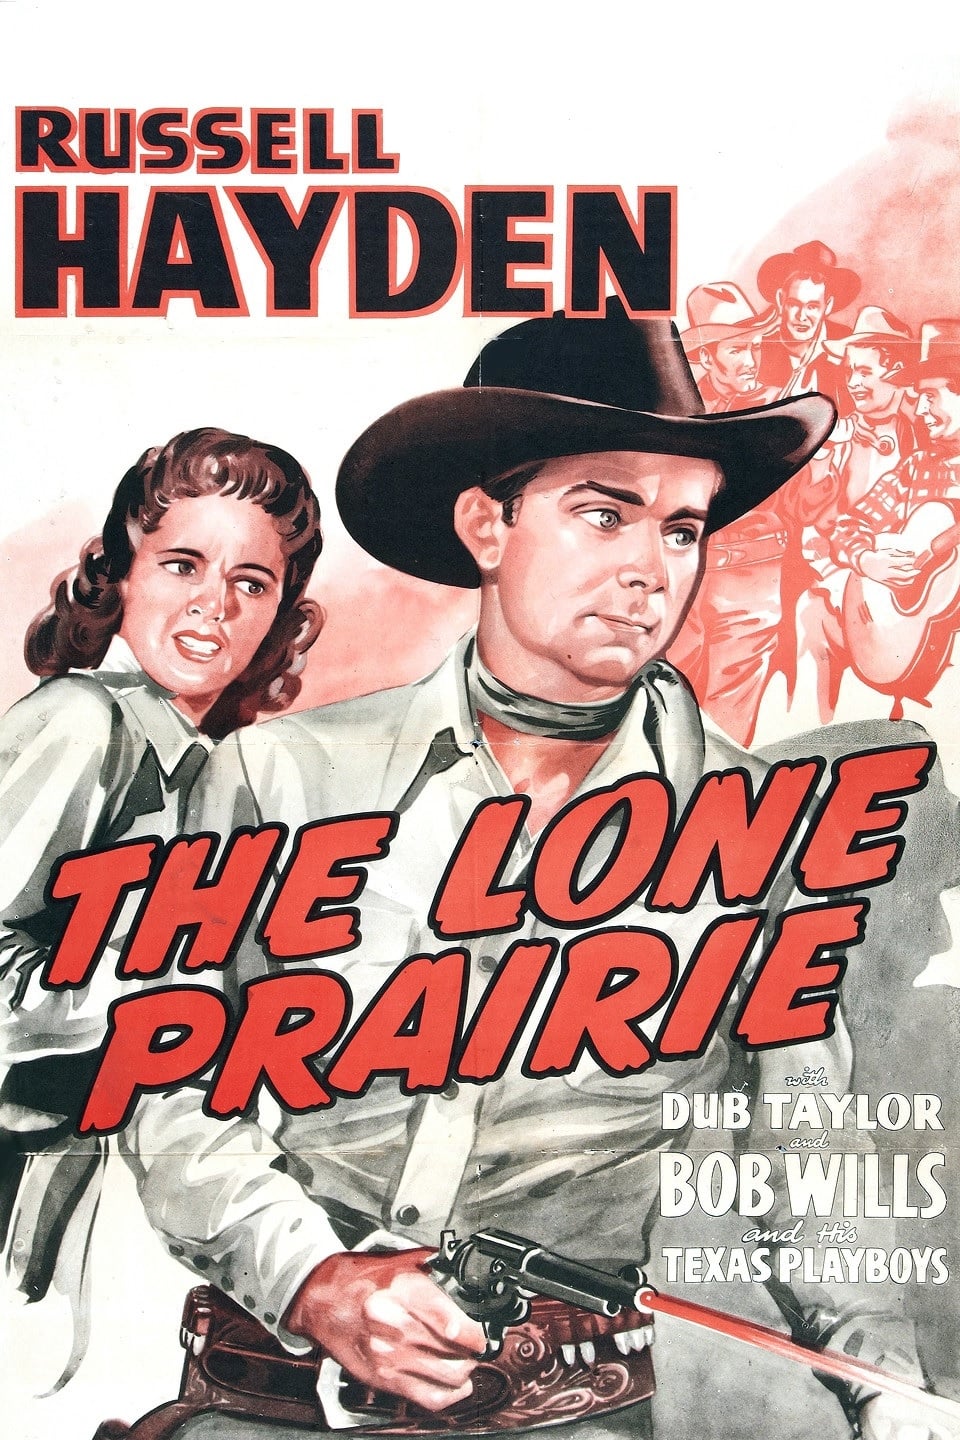 The Lone Prairie (1942)